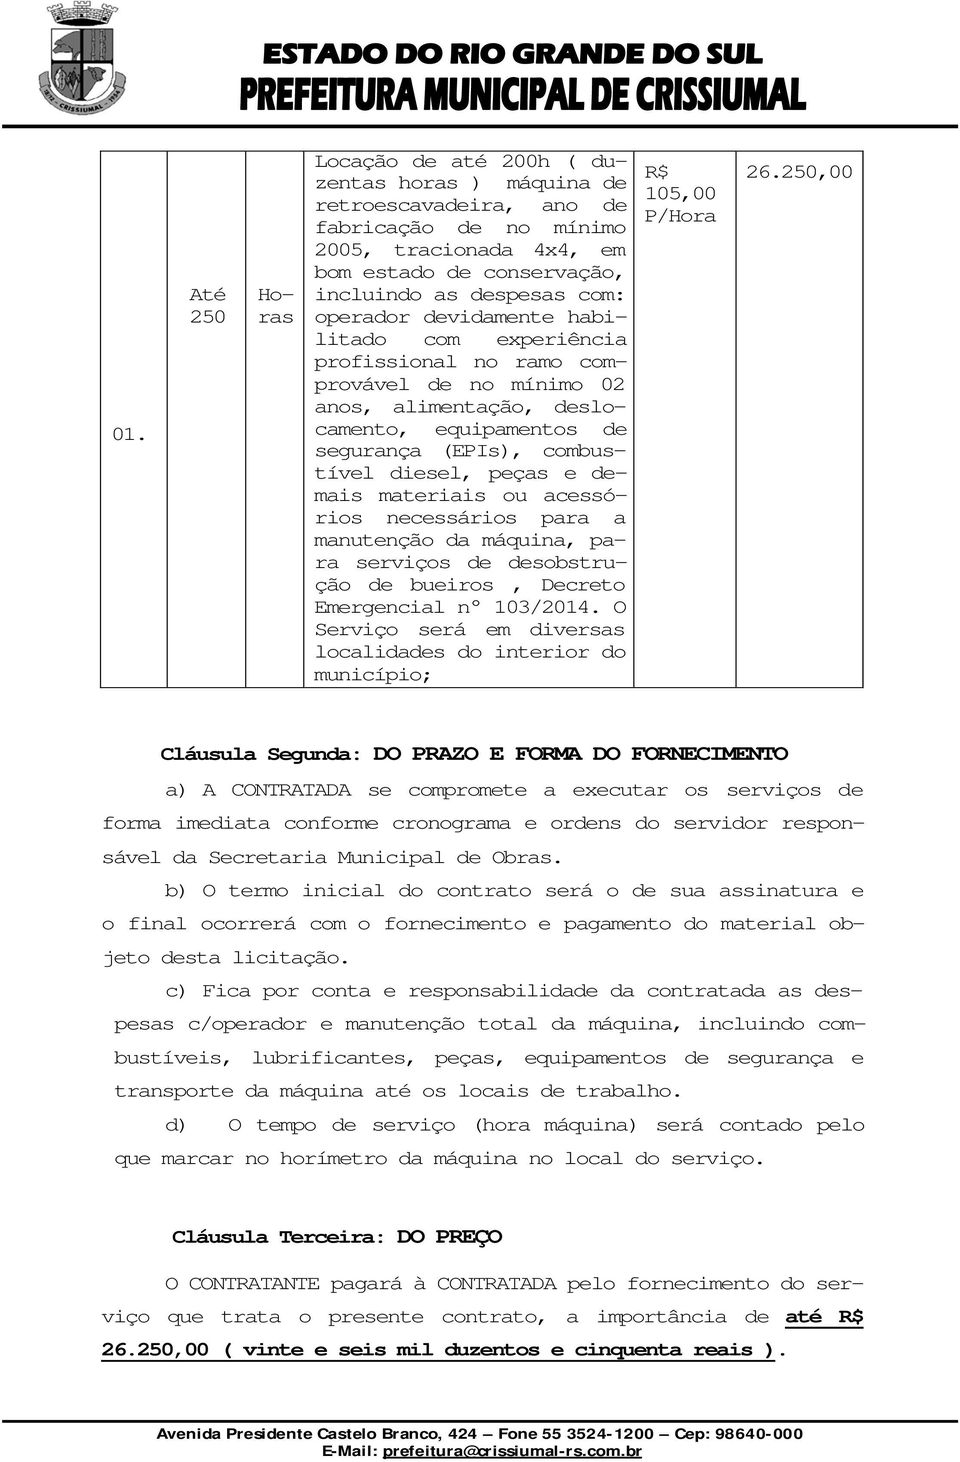 materiais ou acessórios necessários para a manutenção da máquina, para serviços de desobstrução de bueiros, Decreto Emergencial n 103/2014.